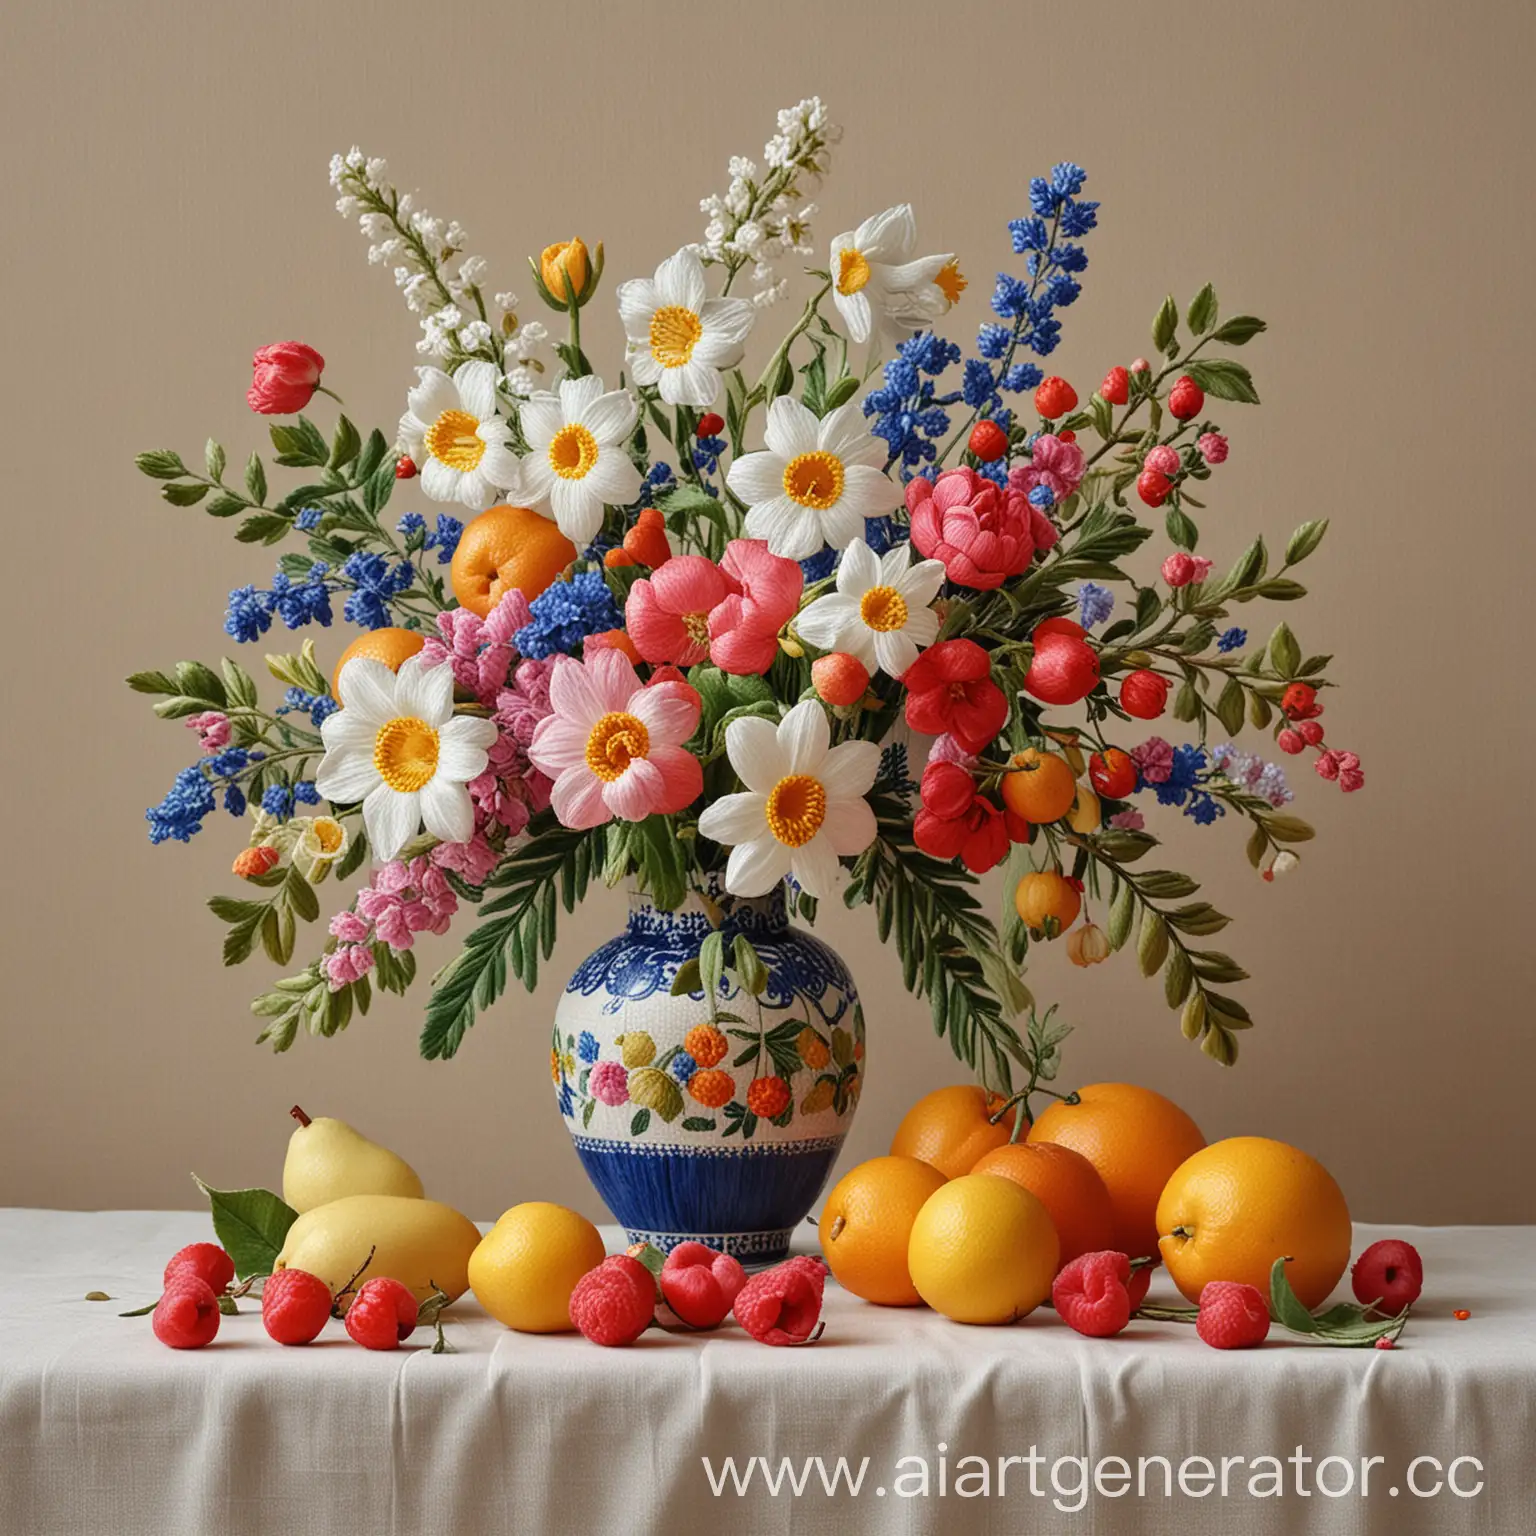 натюрморт весна цветы вышивка ваза фрукты